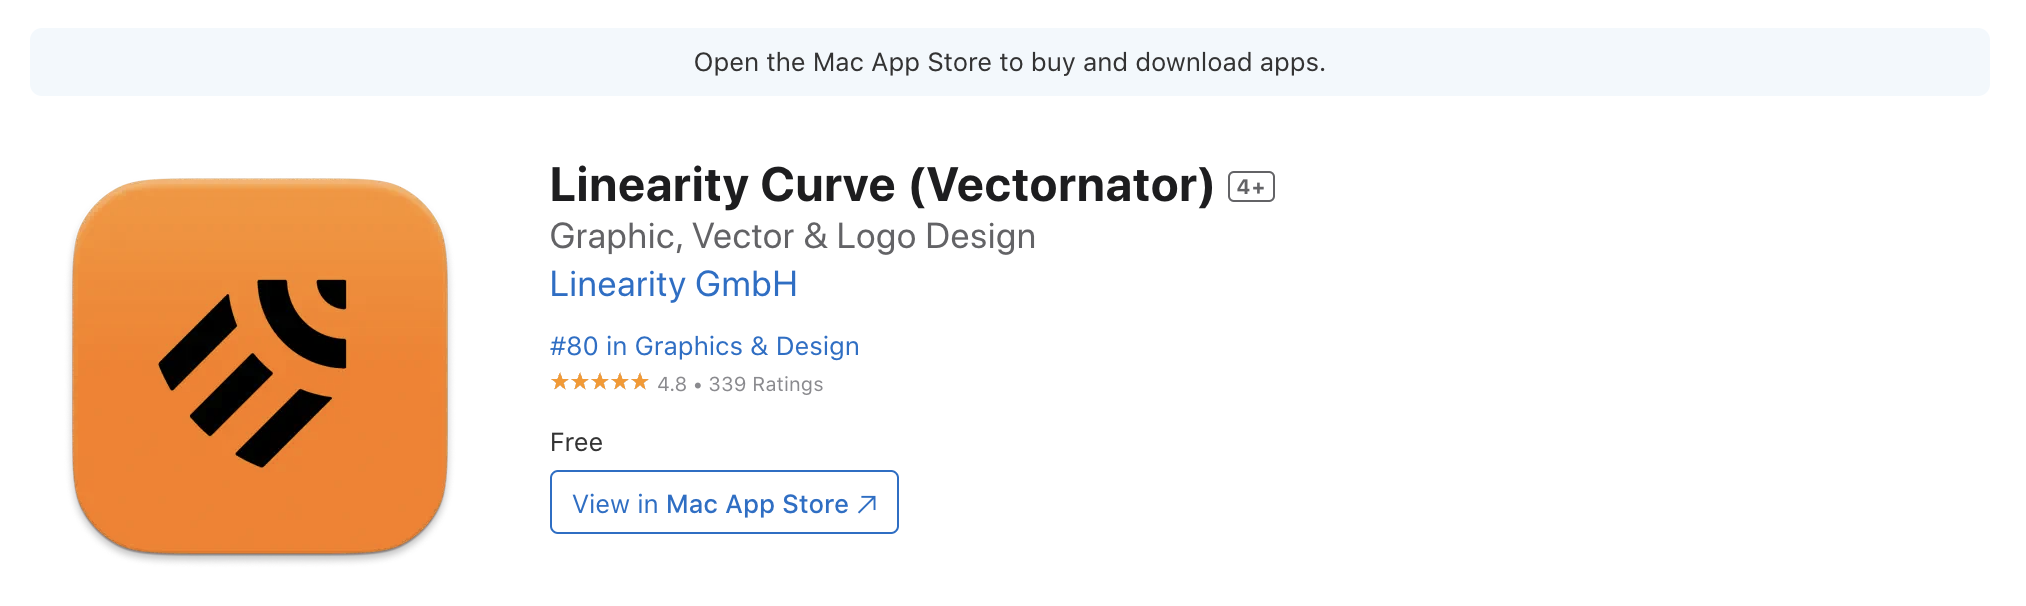 แอปวาดรูป iPad Vectornator